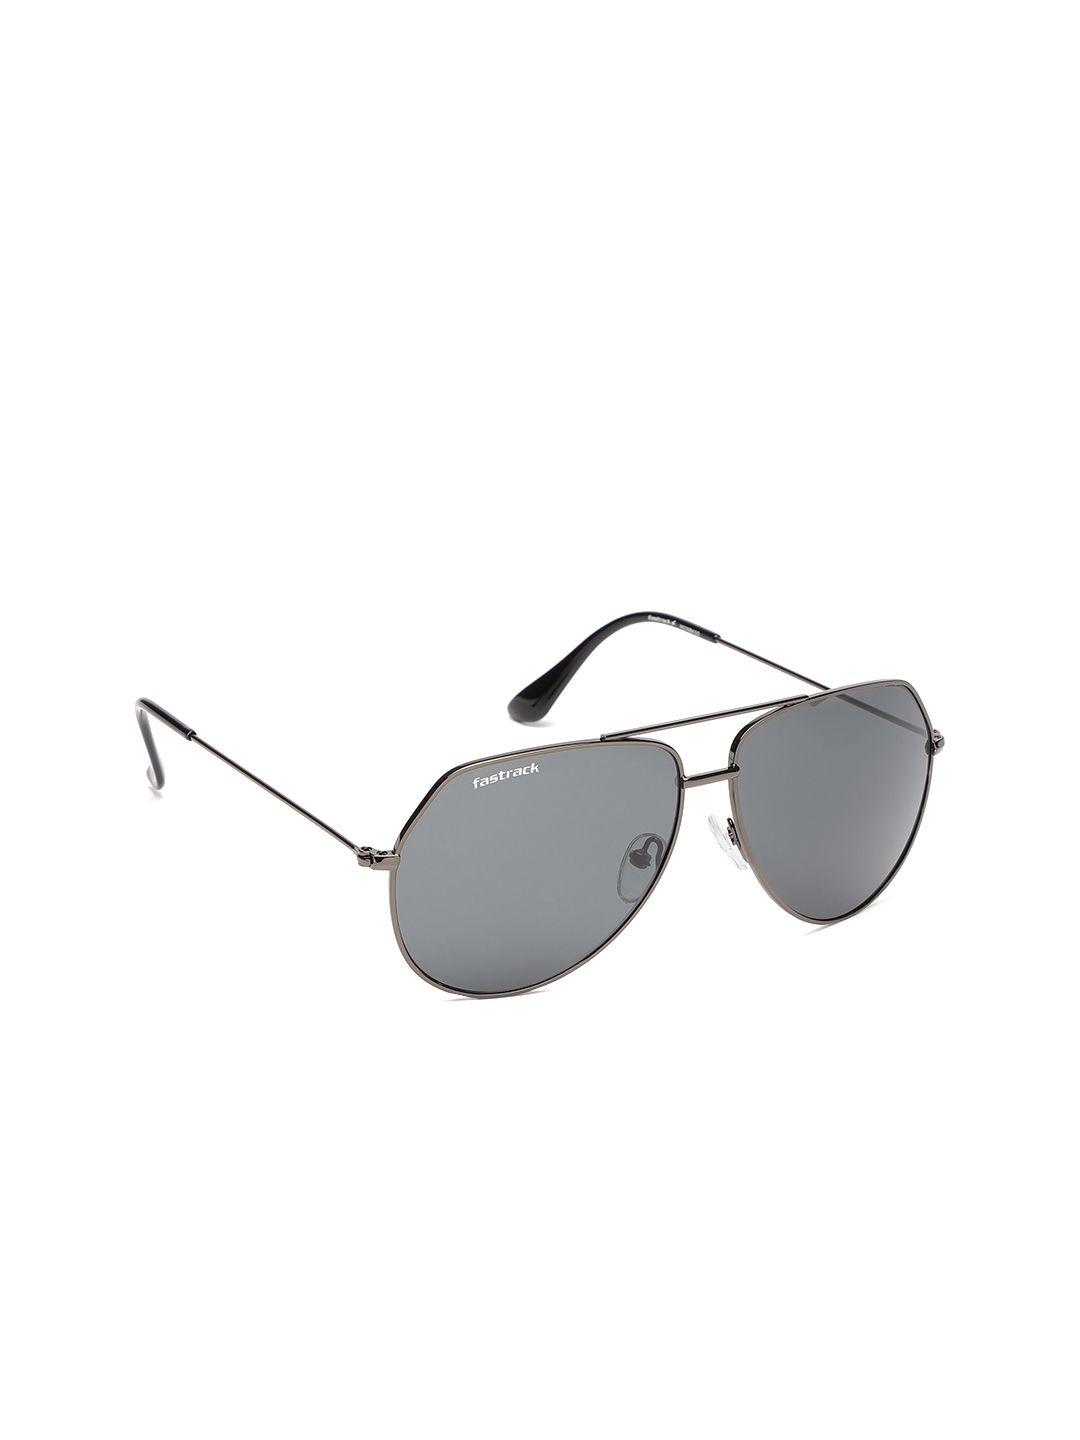 fastrack men aviator sunglasses m226bk5g